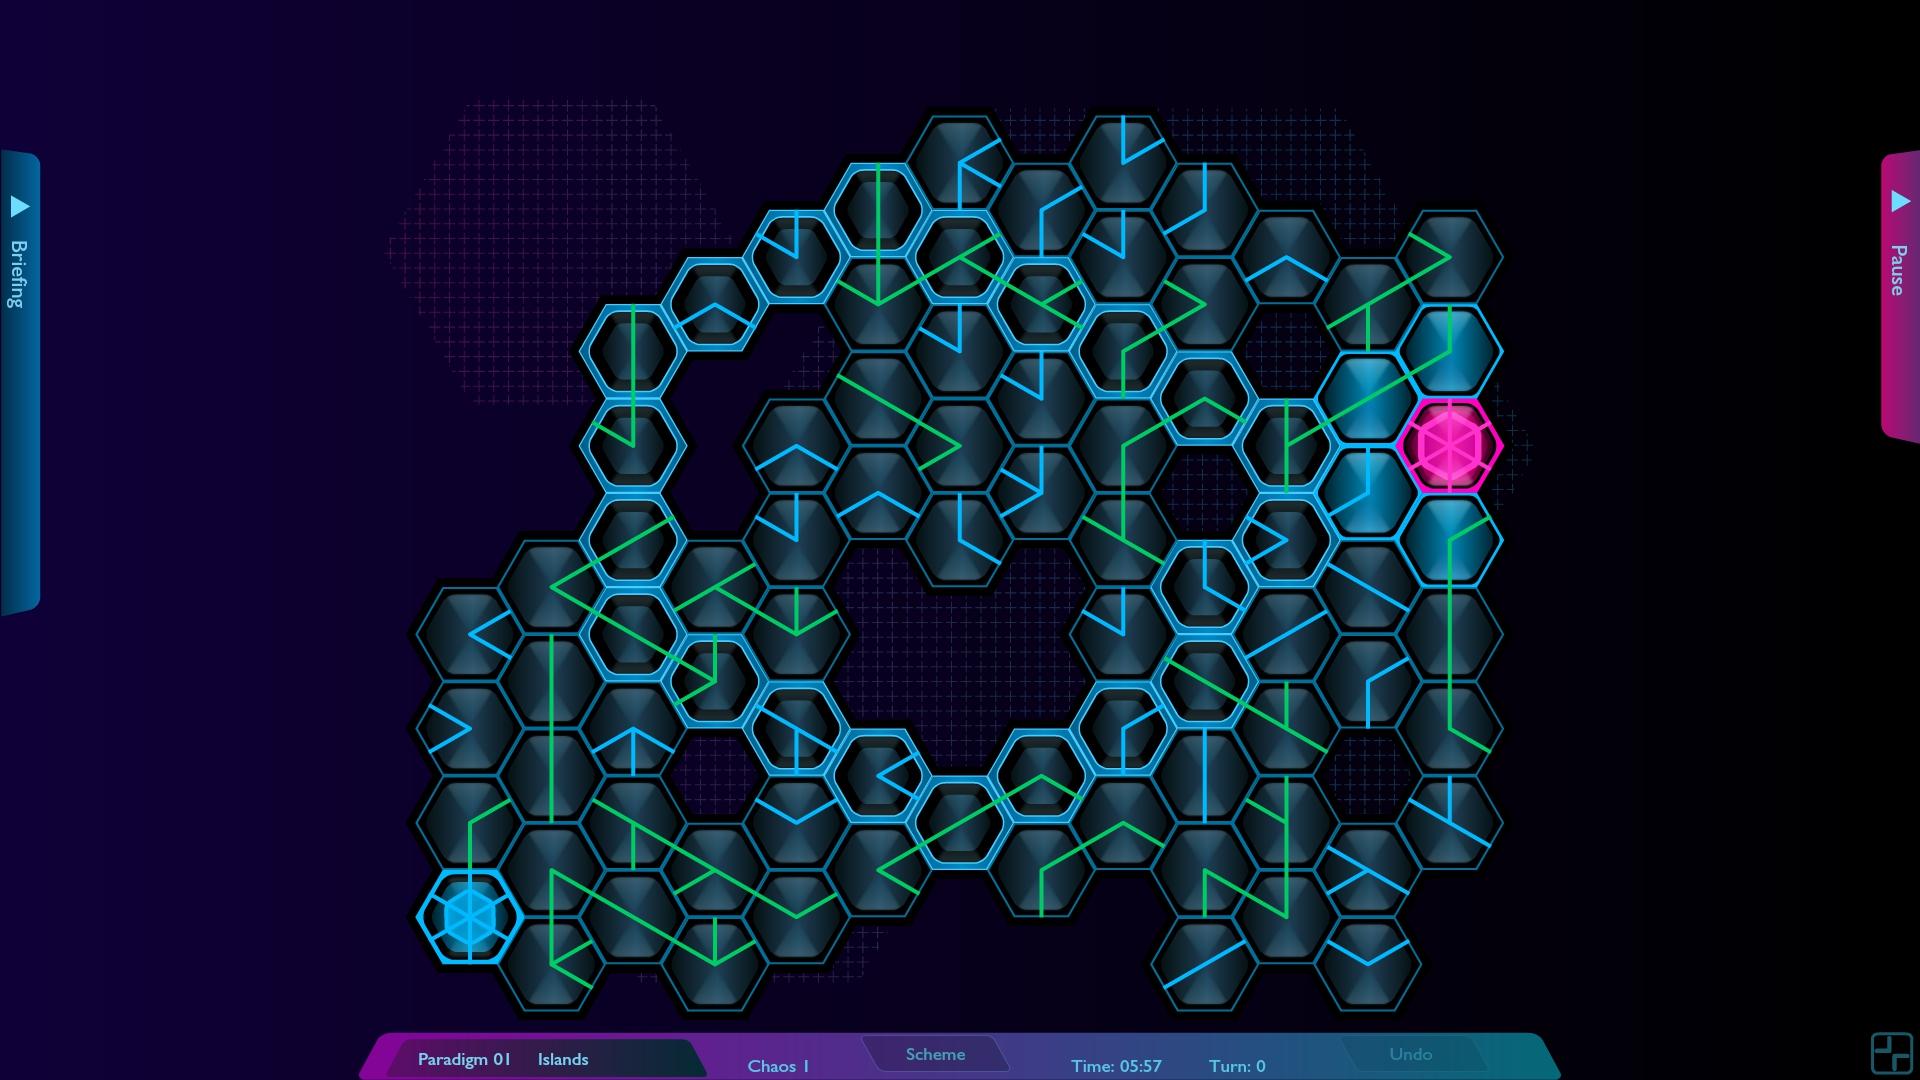 Screenshot №1 from game Hexoscope